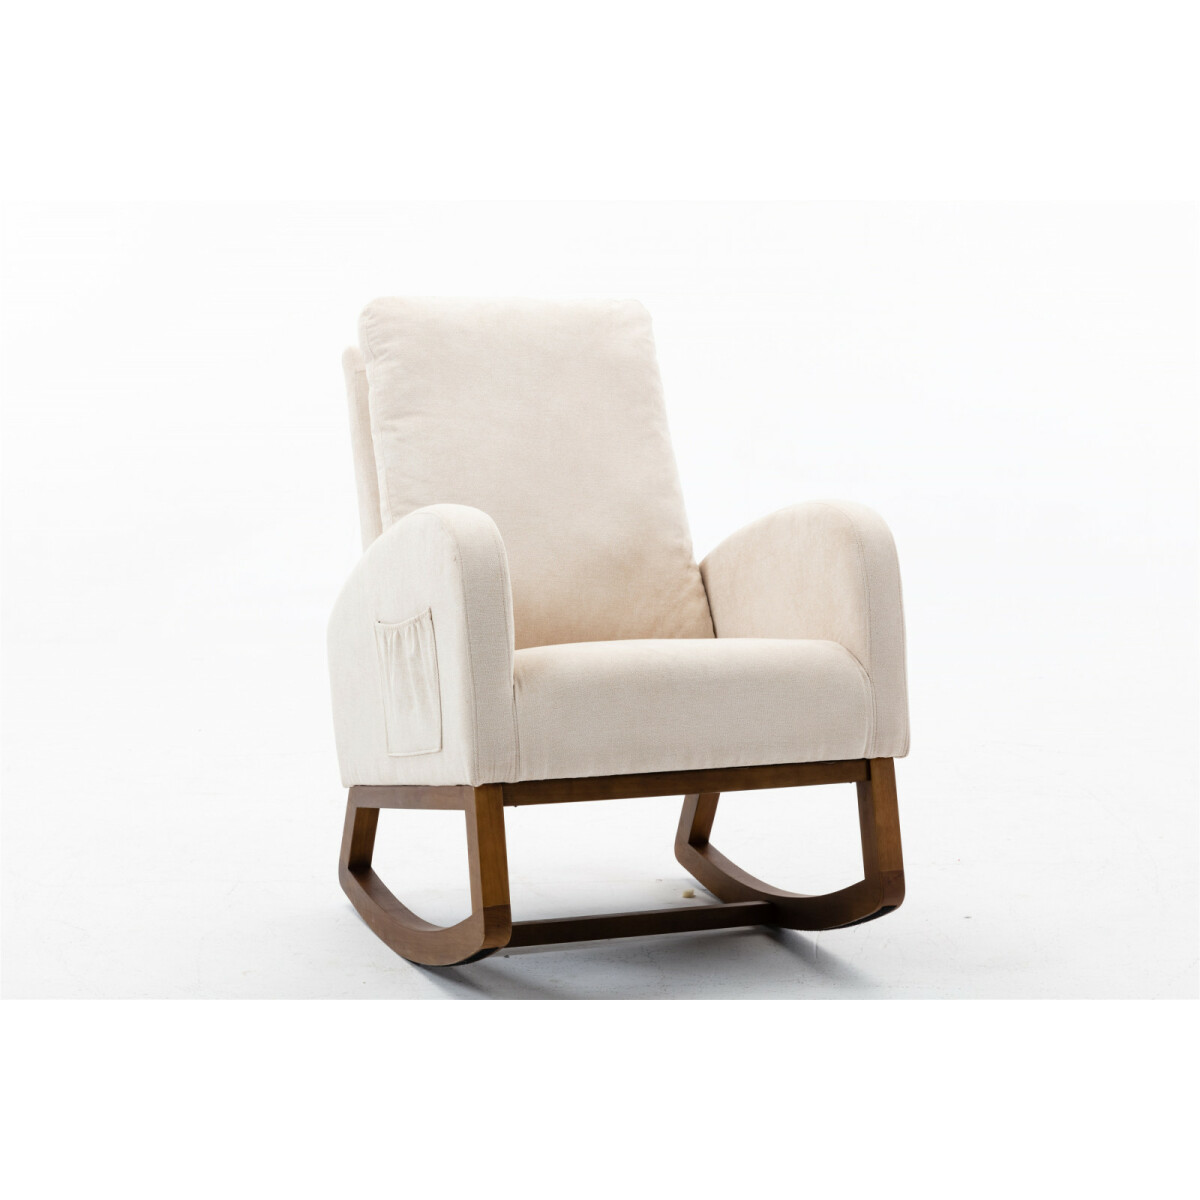 lbf chaise à bascule rembourrée avec dossier haut et poche latérale, assise rembourrée avec base en bois de caoutchouc, fauteuil inclinable pour salon, chambre, 100 x 68 x 93 cm, beige  beige